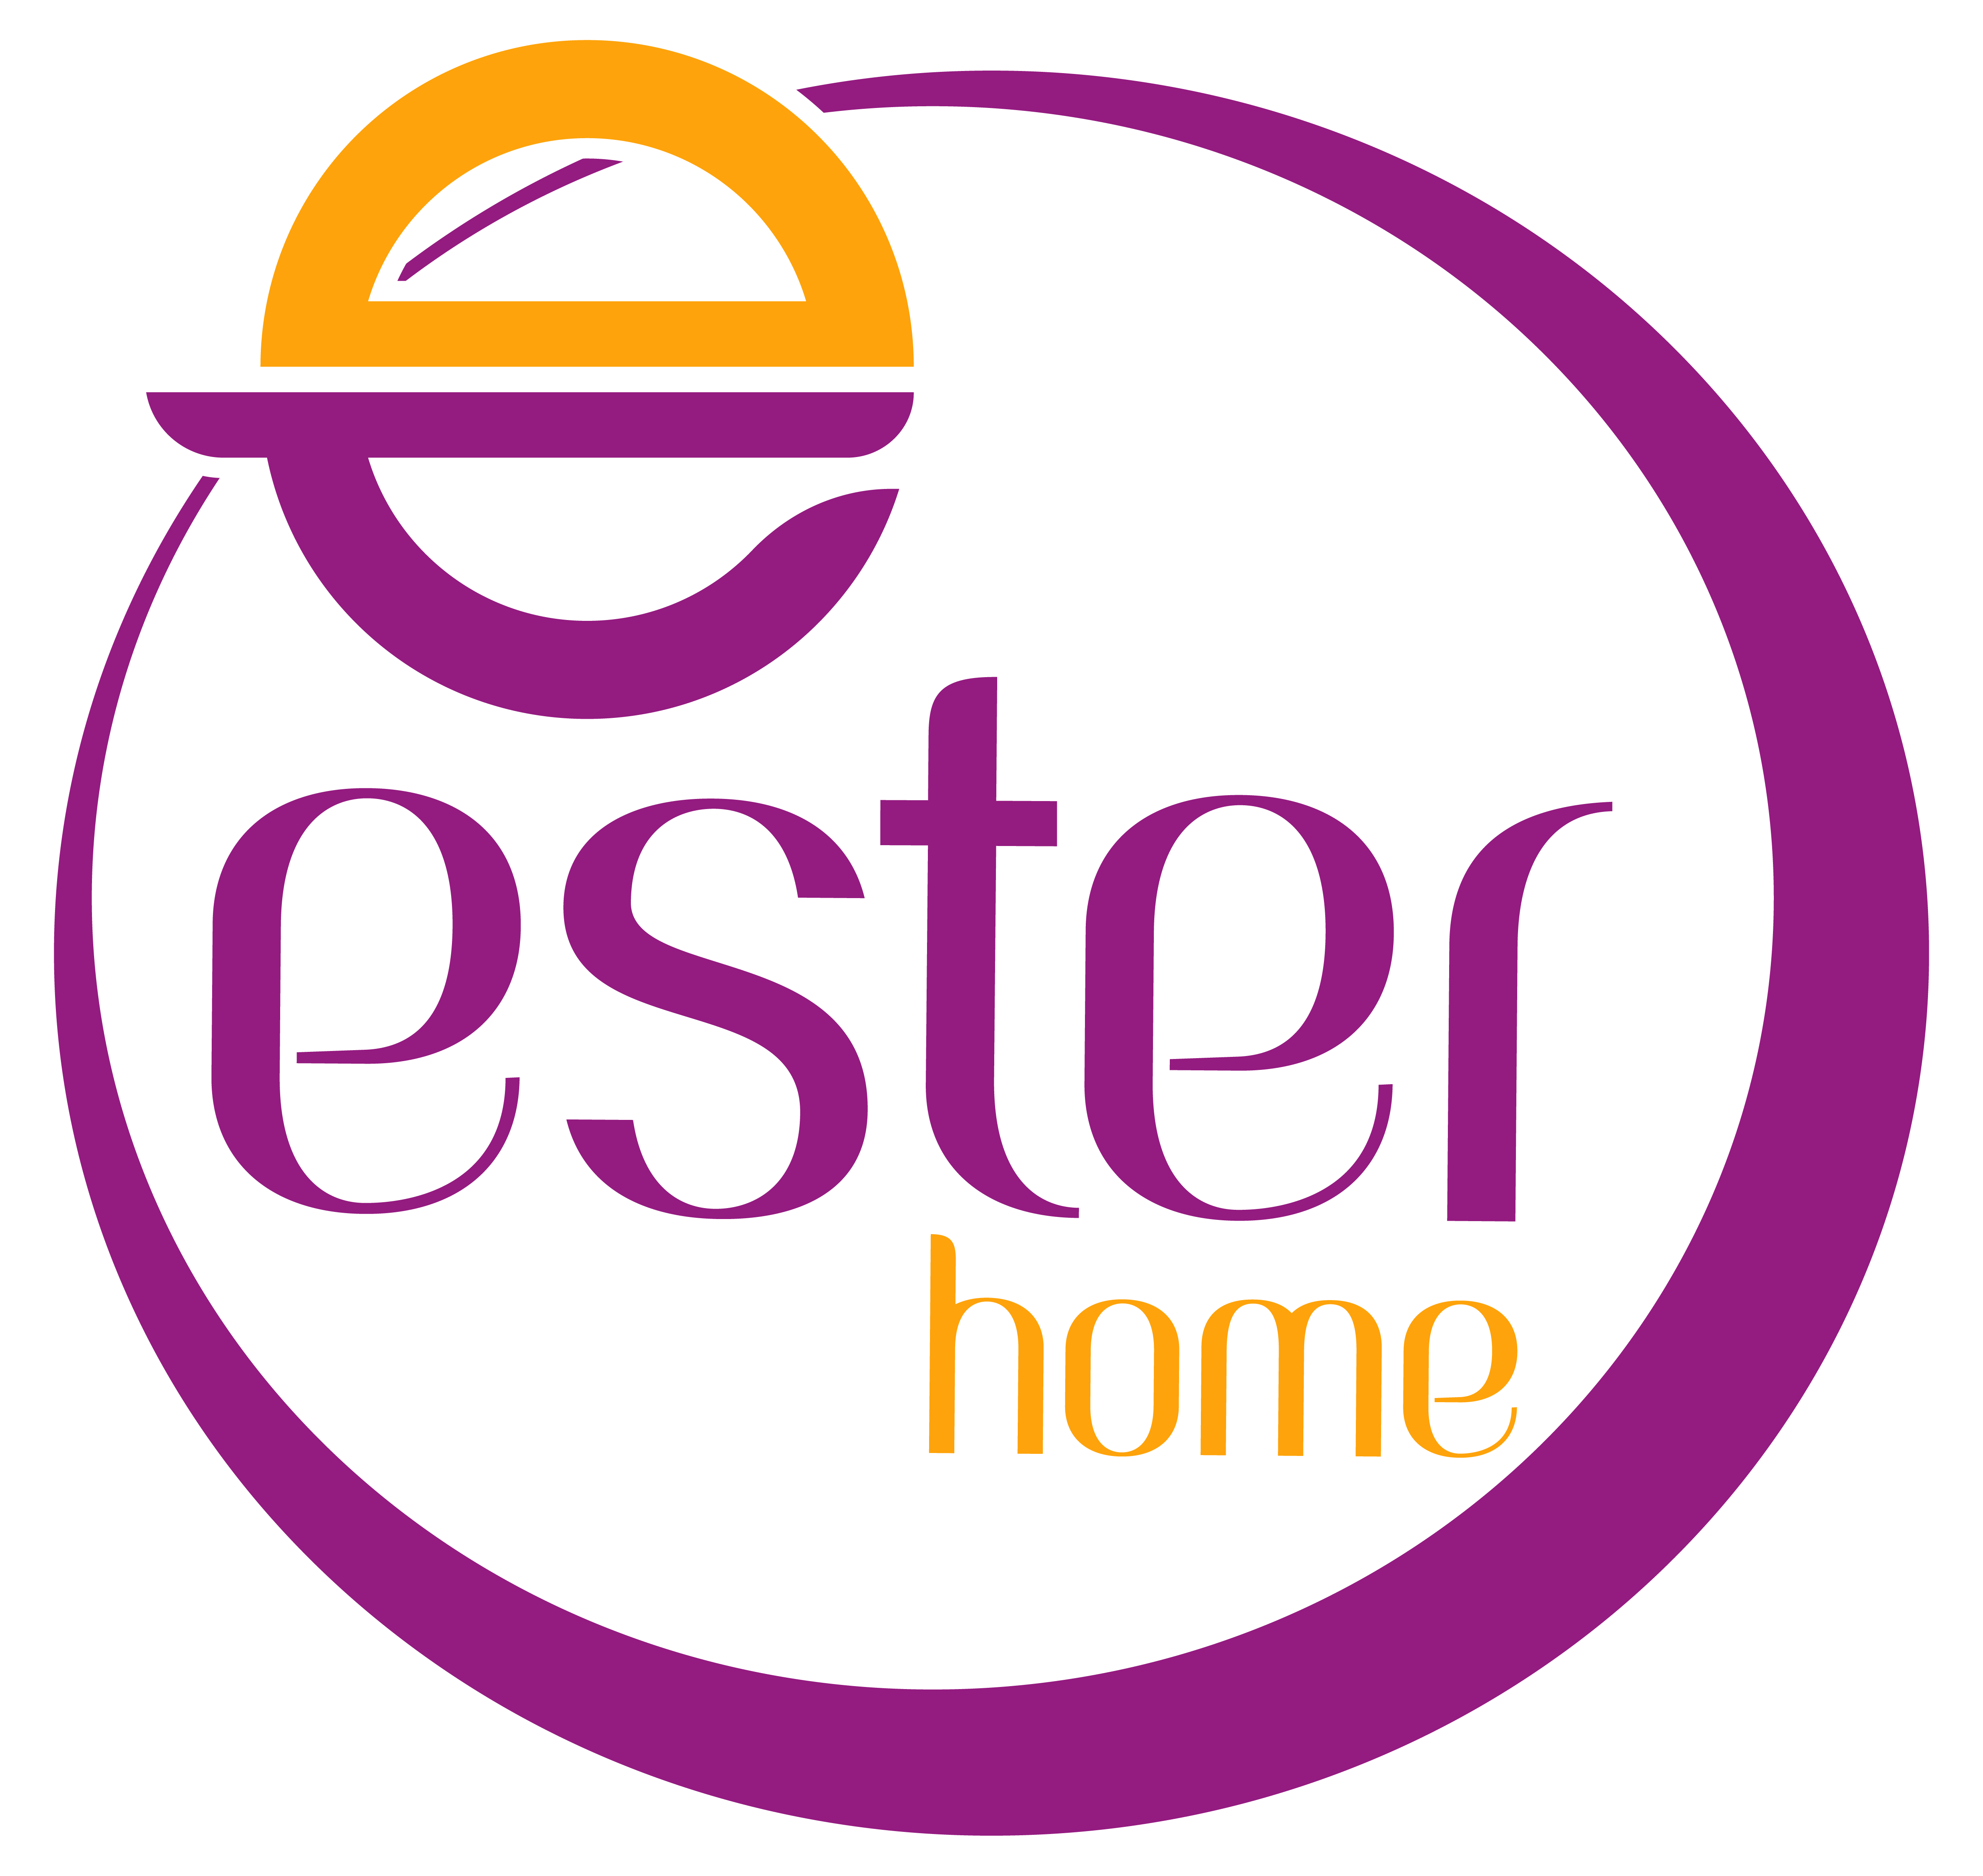 Ester Home